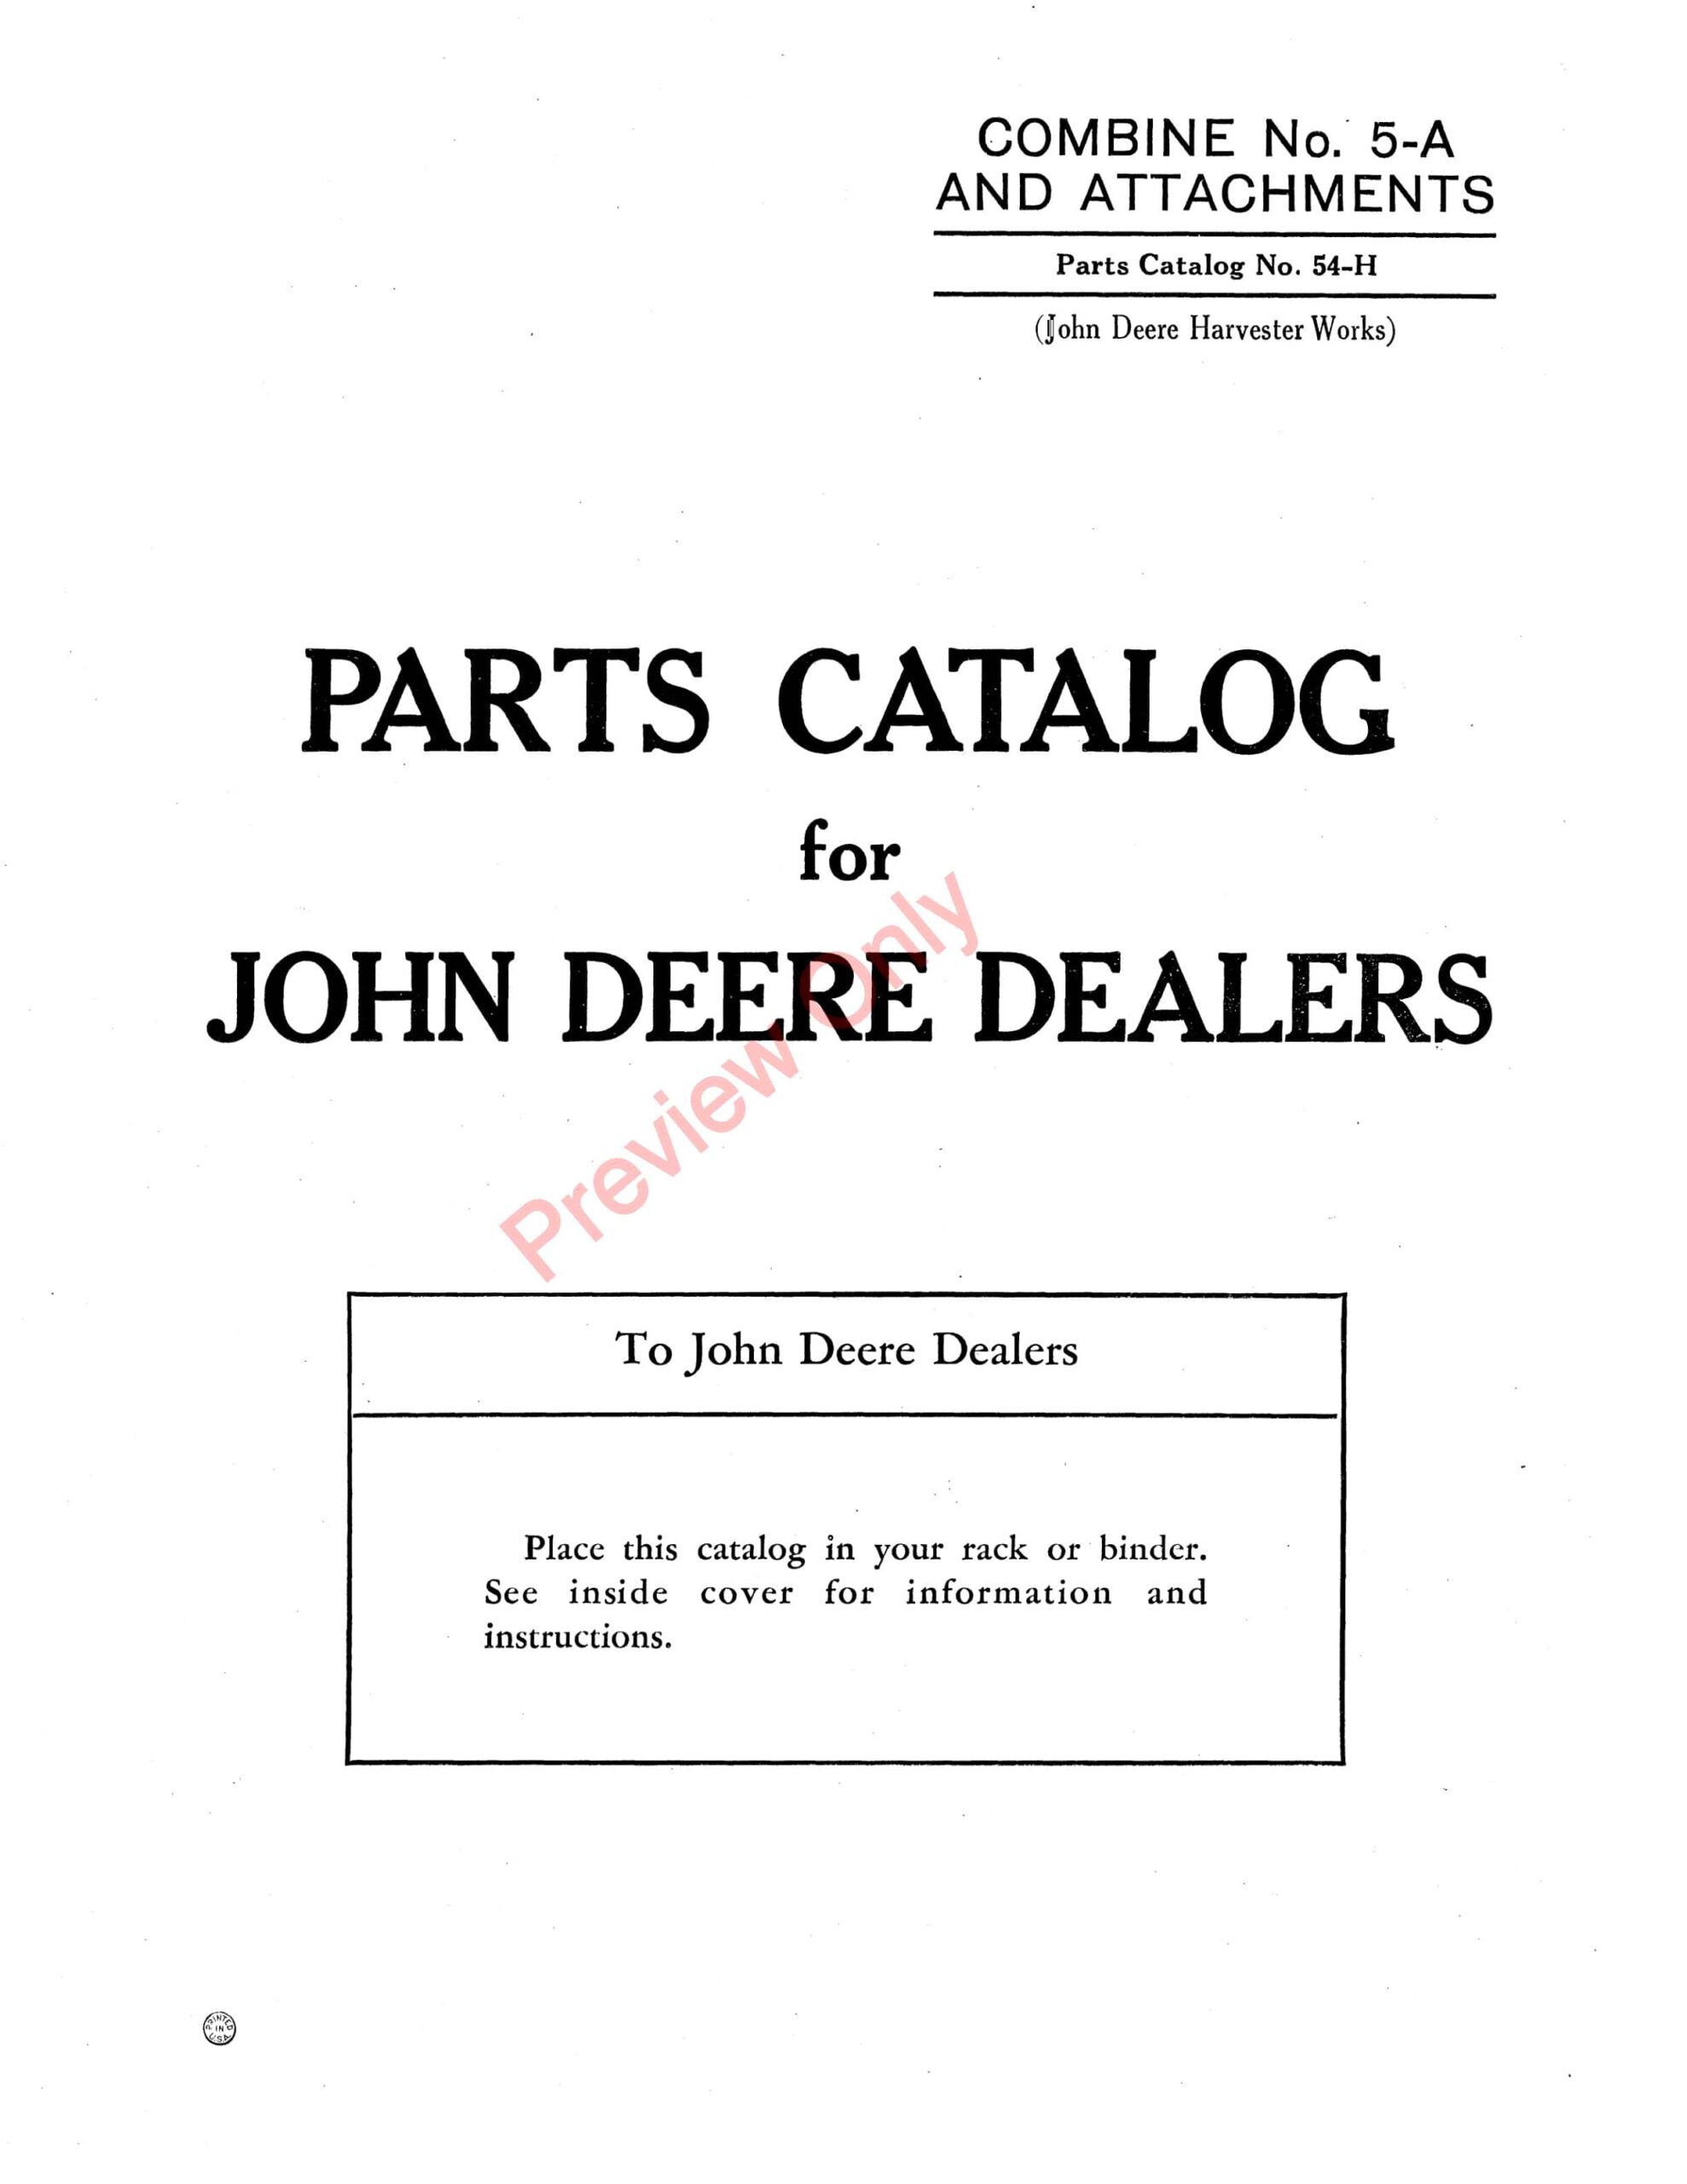 John Deere #5A Combine and Attachments Parts Catalog CAT54H 01JUN45-1